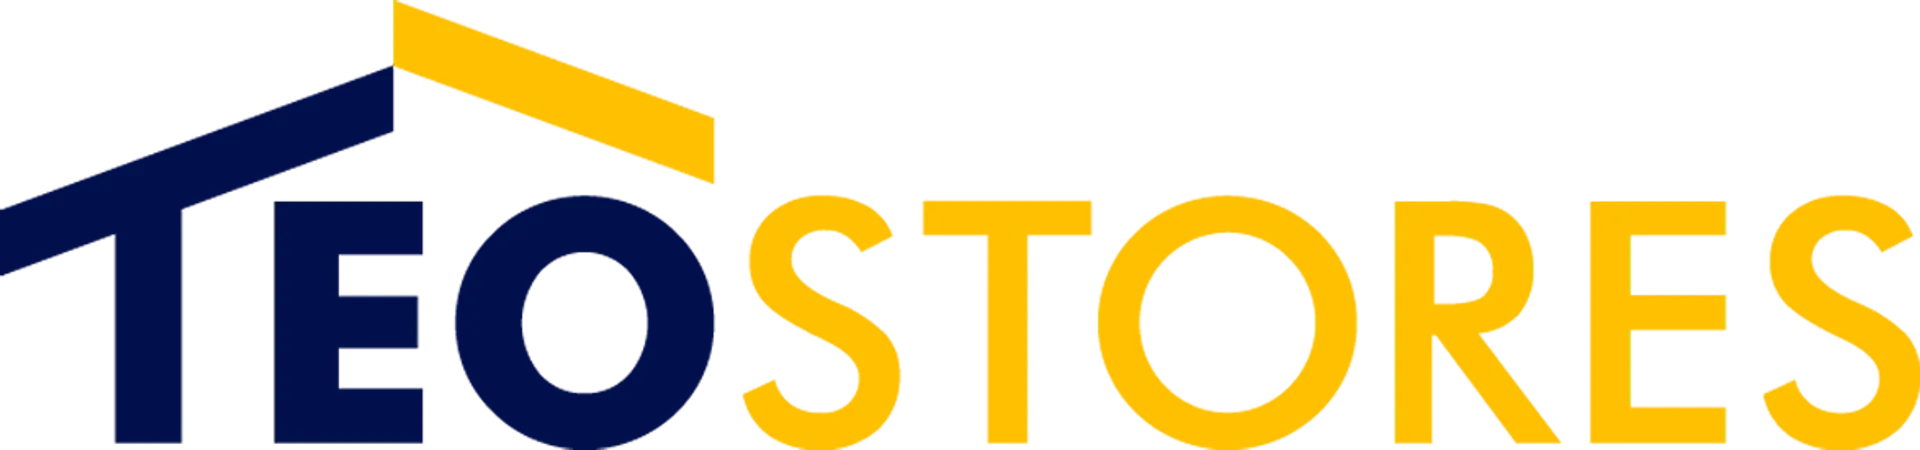 TEOSTORES logo